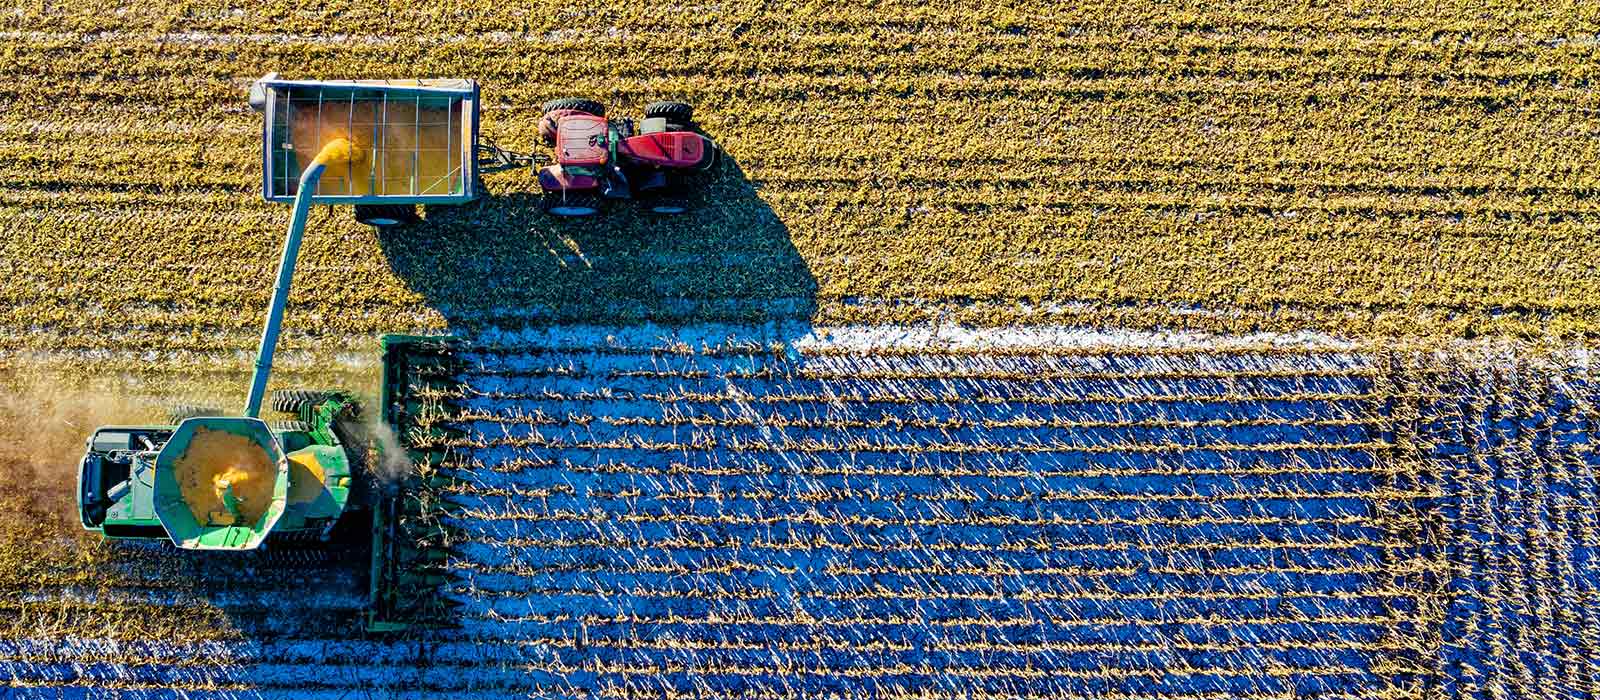 Harvesting crops. Photo by Tom Fisk/Pexels